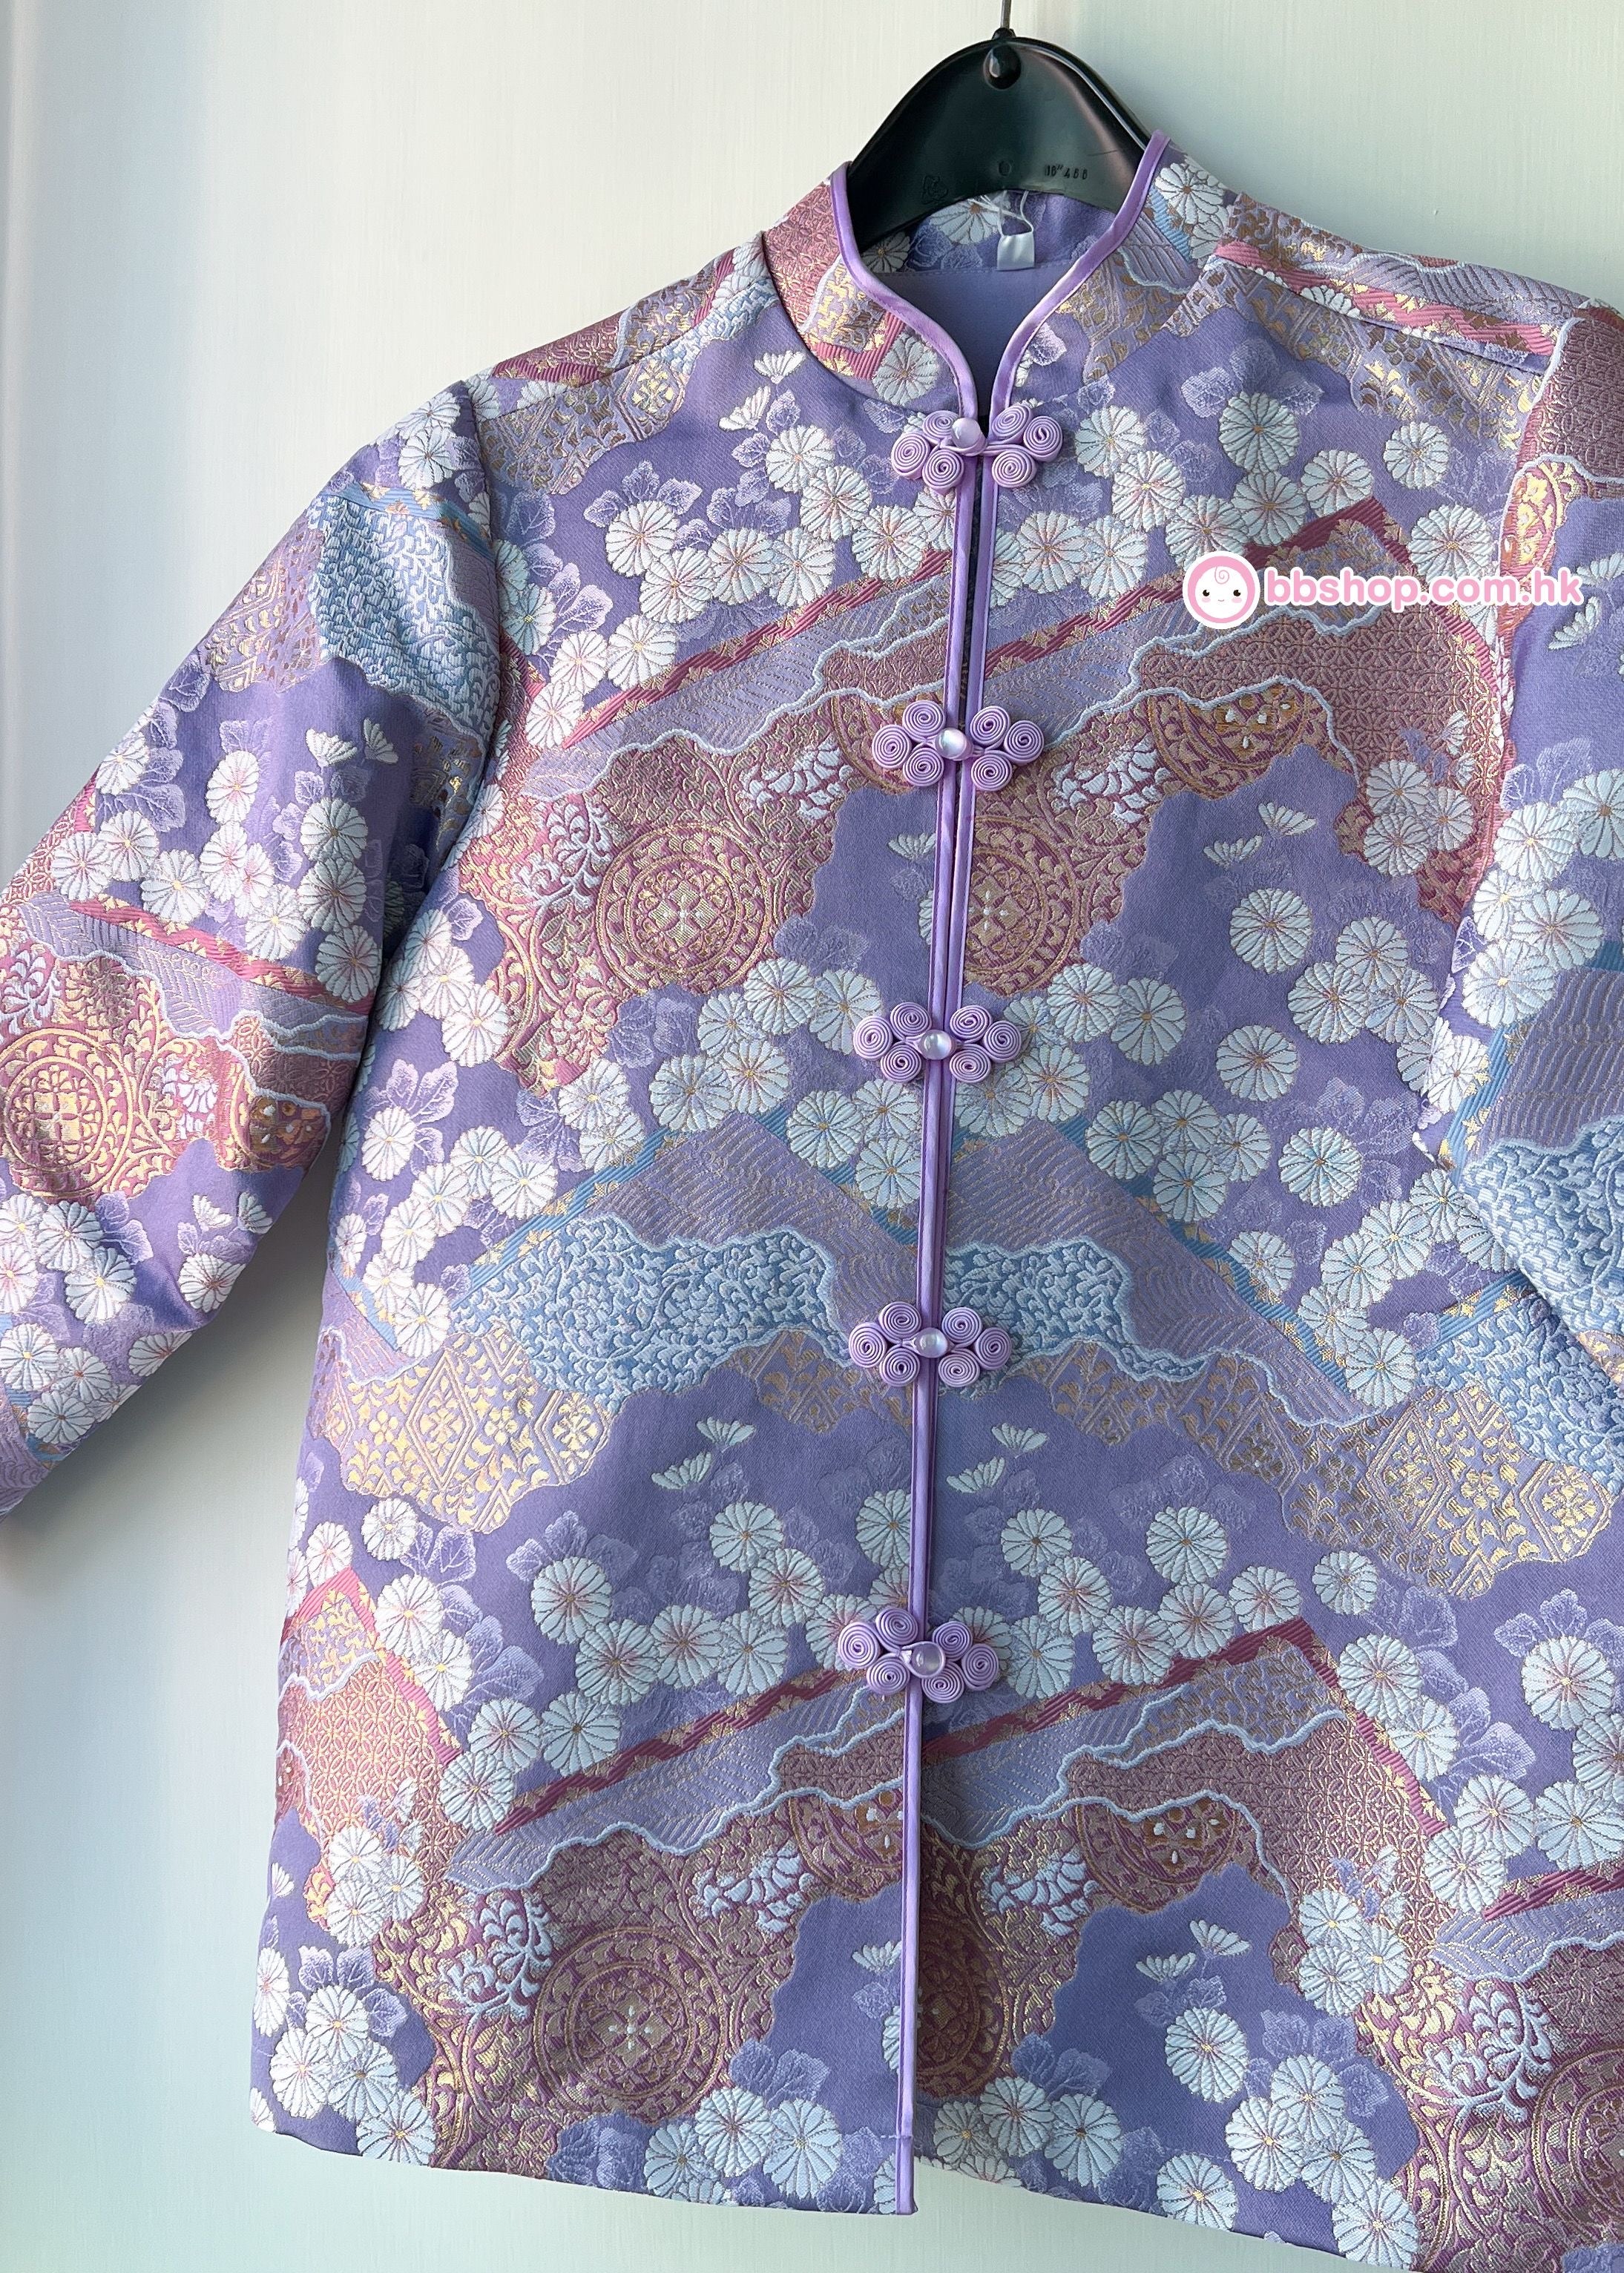 HMC210 日本製金欄金線織造布 淺紫和花成人女裝高級中國服